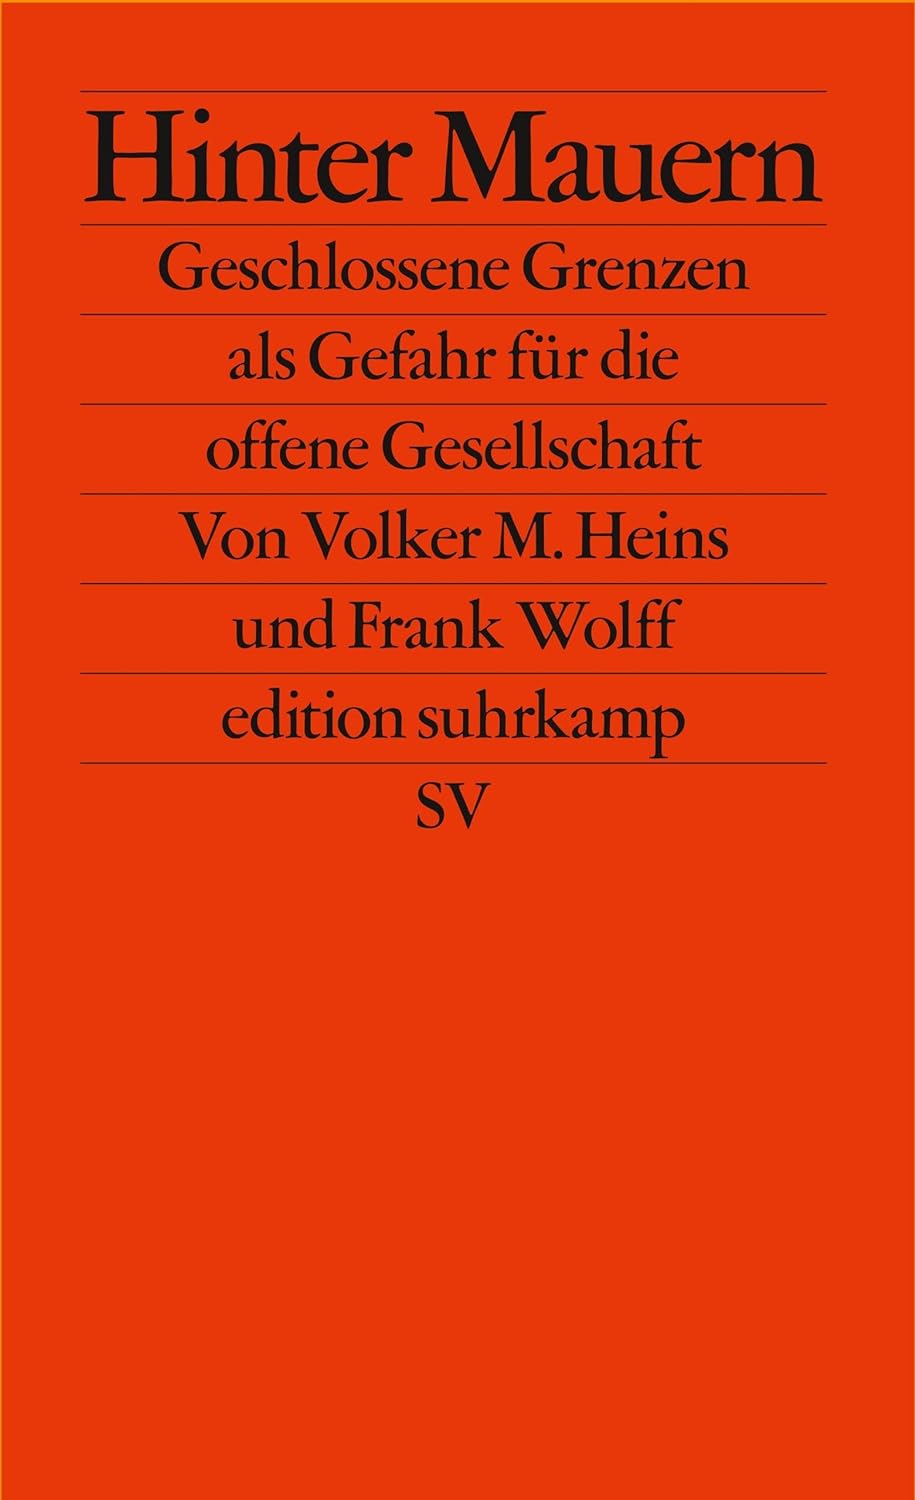 Volker M. Heins, Frank Wolff, Hinter Mauern